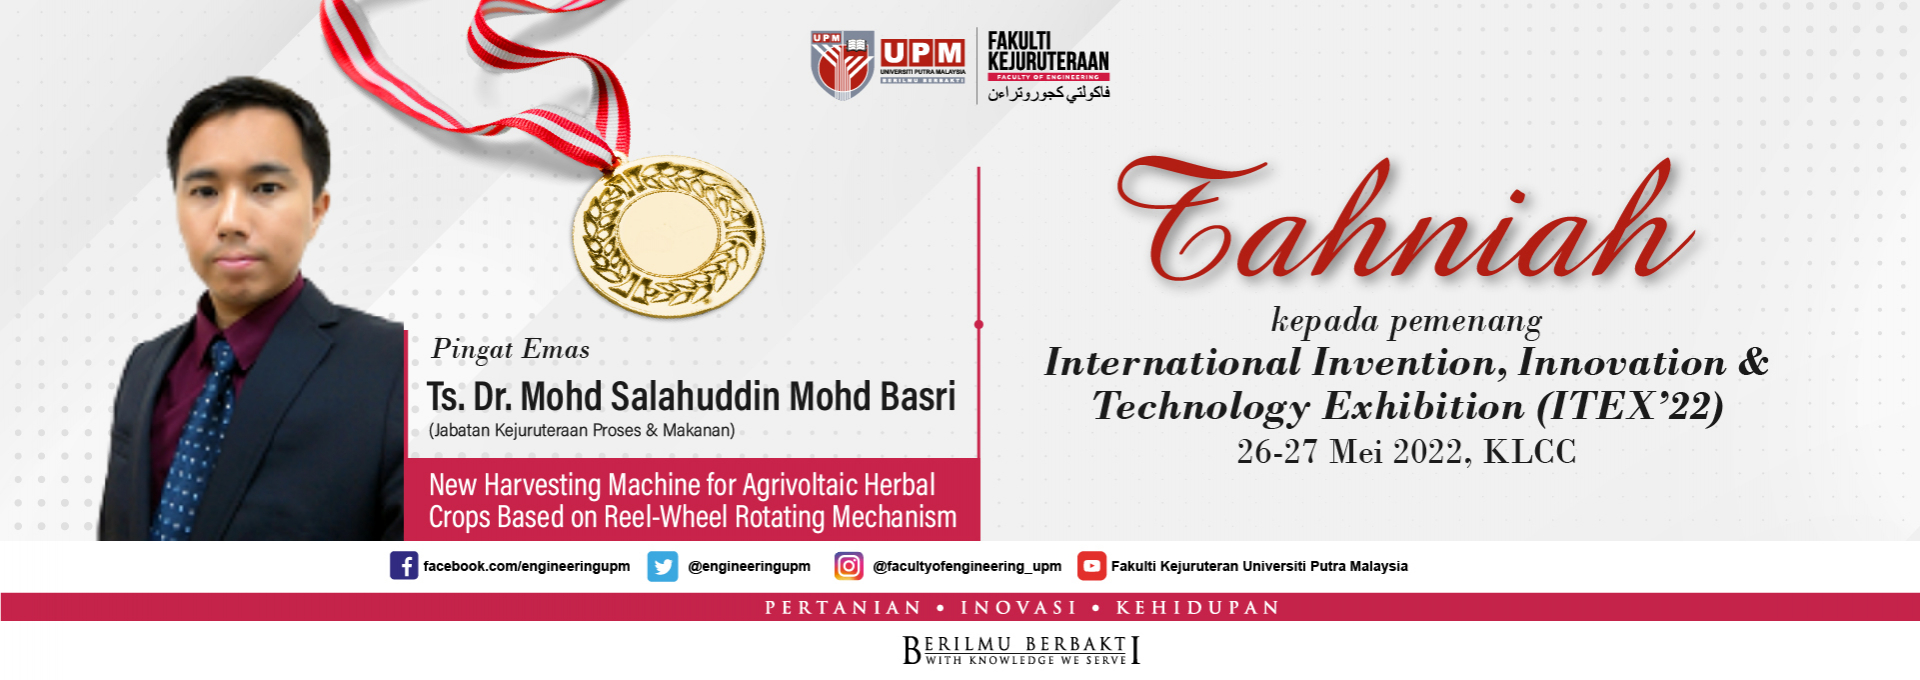 Tahniah kepada pemenang (ITEX2022)_ Dr Mohd Salahuddin